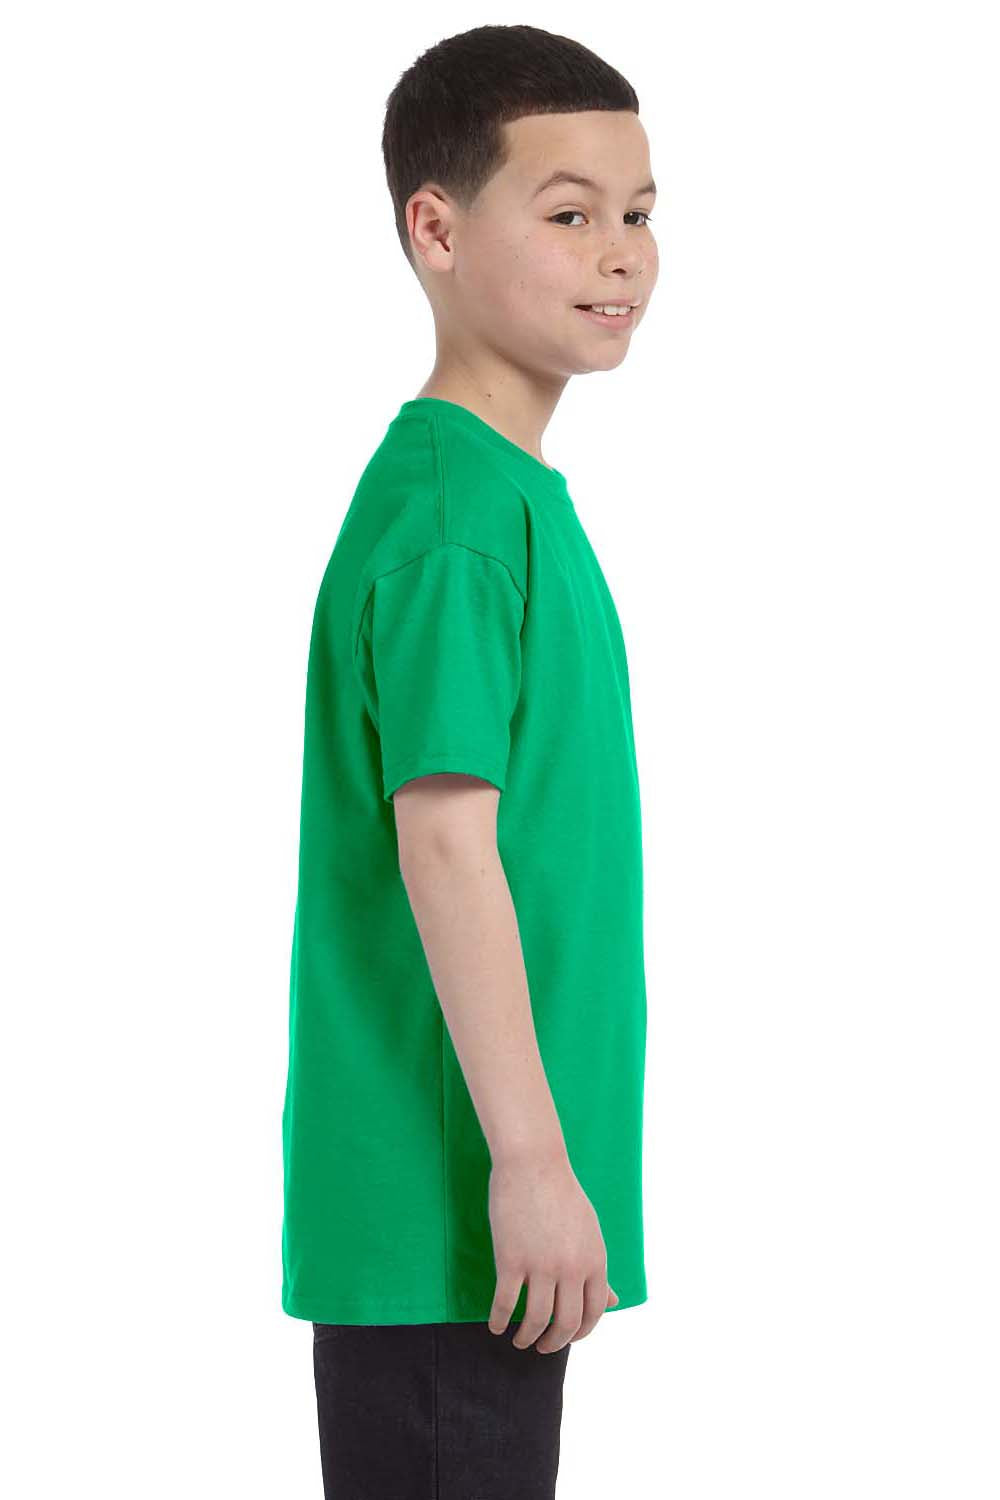 Gildan G500B Youth Short Sleeve Crewneck T-Shirt Irish Green Side